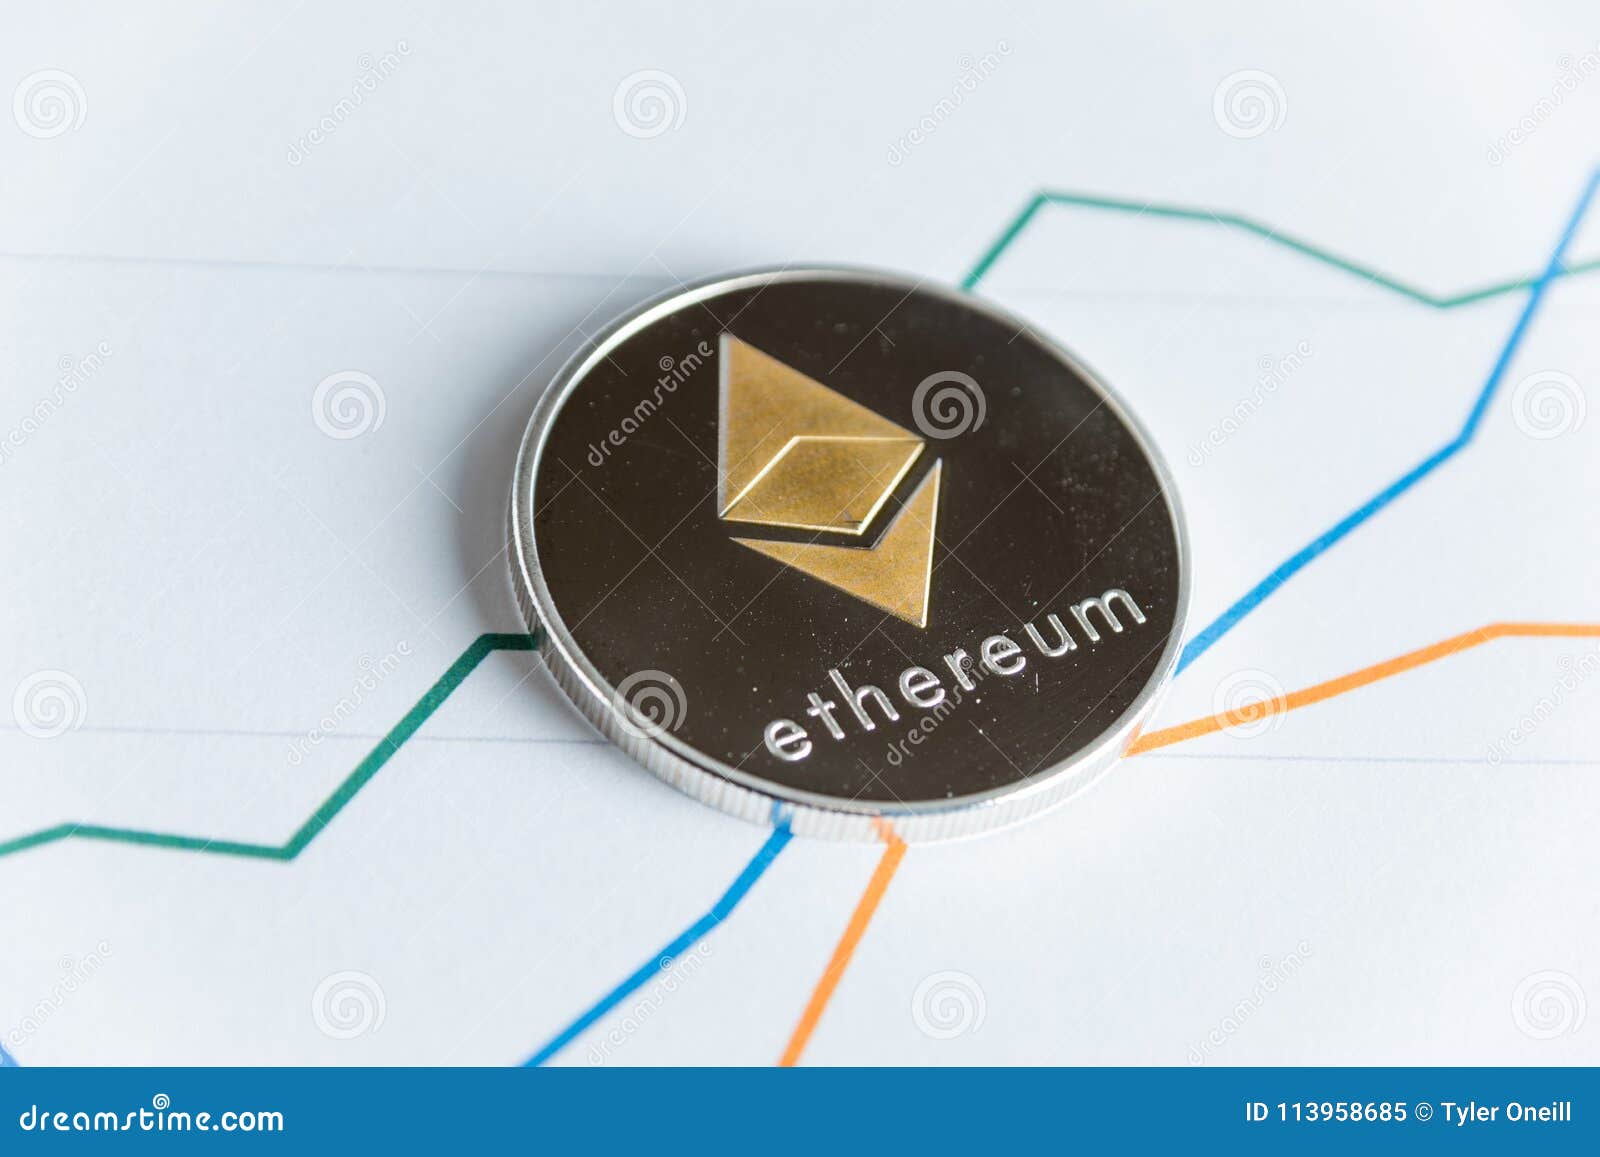 trading con ethereum o bitcoin